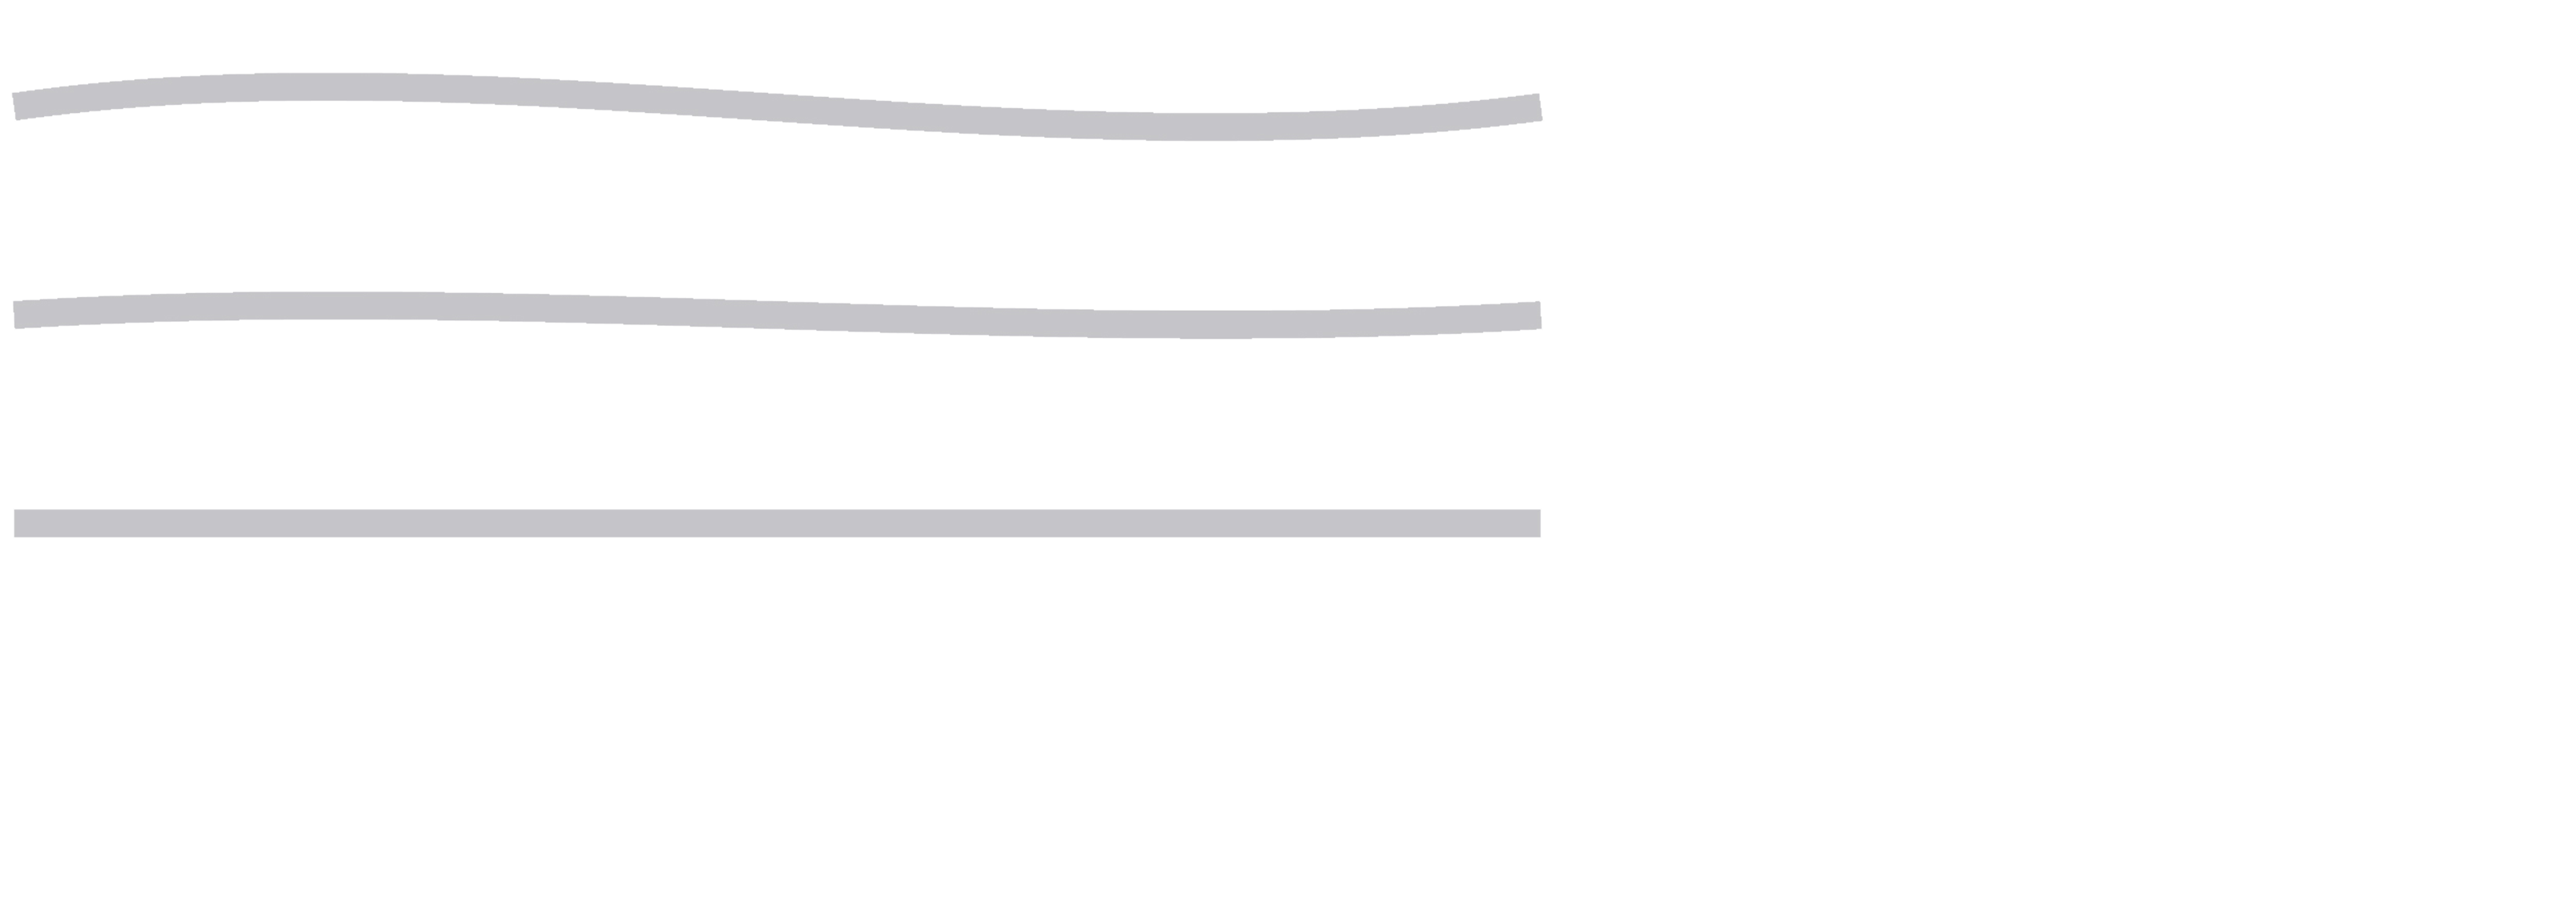 001-merken/recor-bedding/001-logos/recor-bedding-logo.png